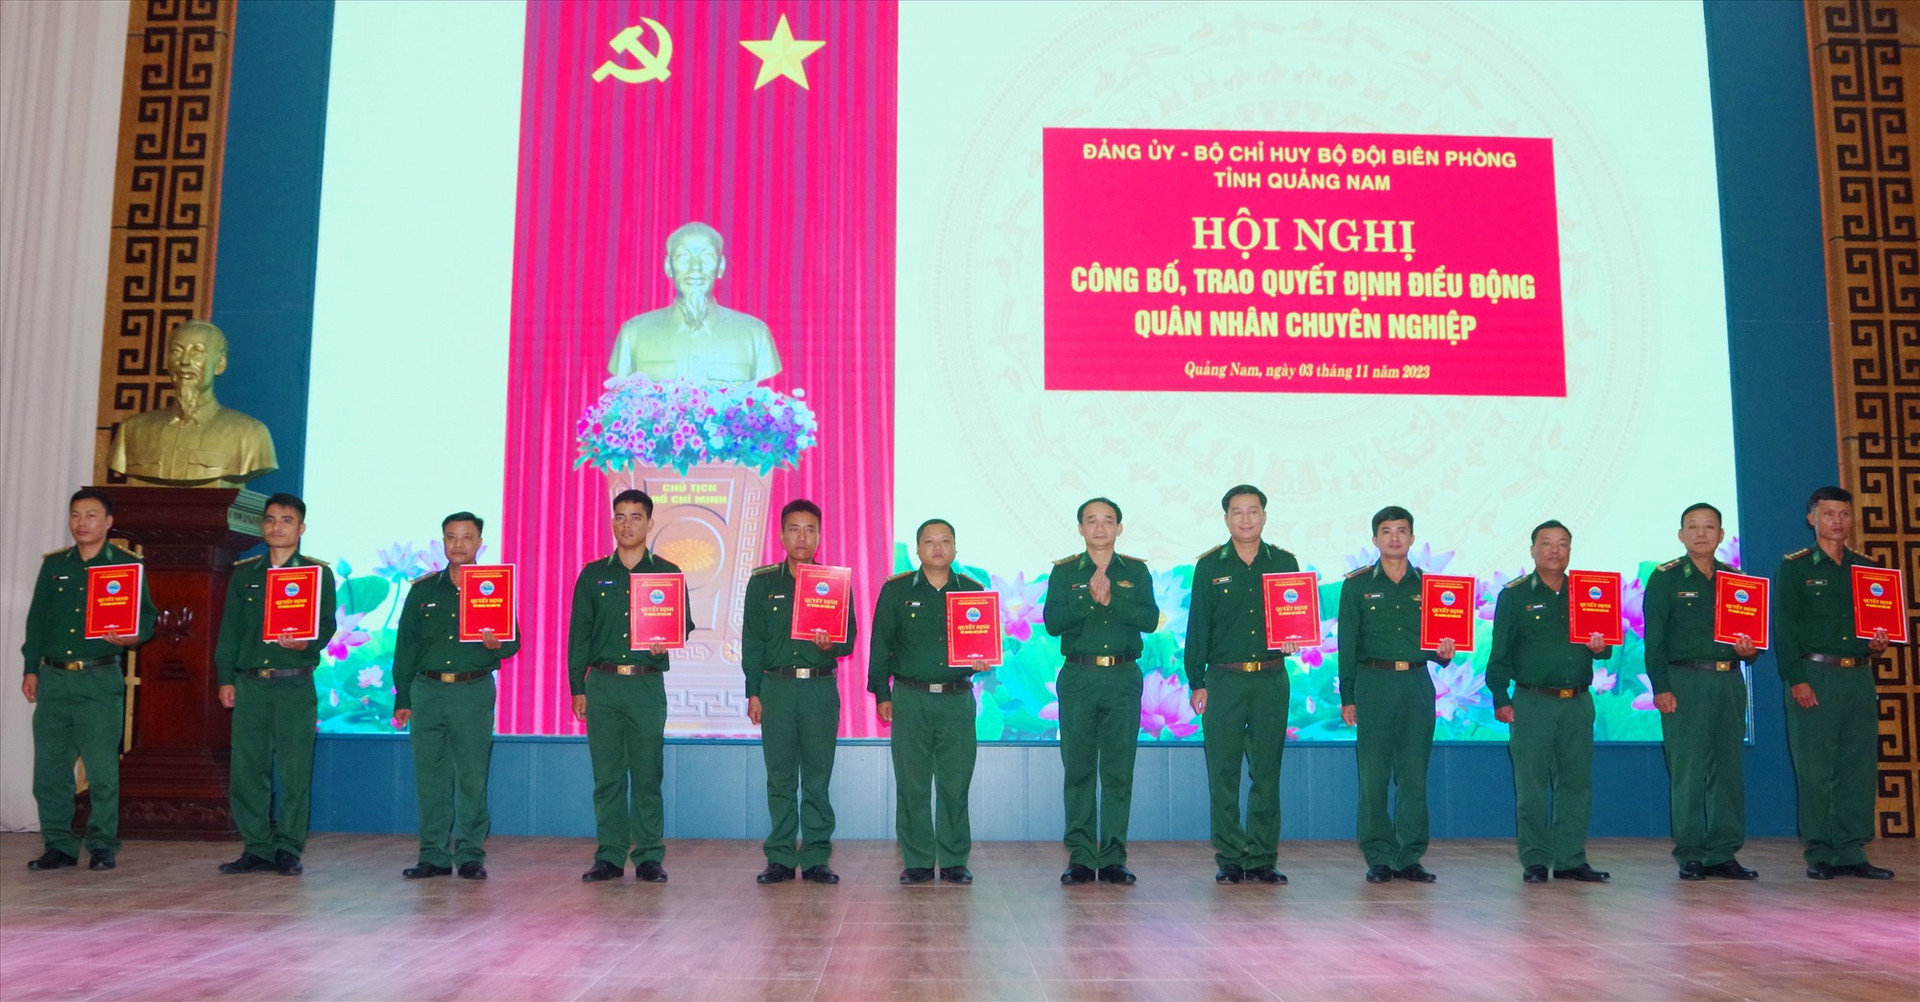 Đại tá Phan Văn Thí - Phó Chỉ huy trưởng, Tham Mưu trưởng BĐBP tỉnh trao quyết định điều động quân nhân chuyên nghiệp. Ảnh: HỒNG ANH